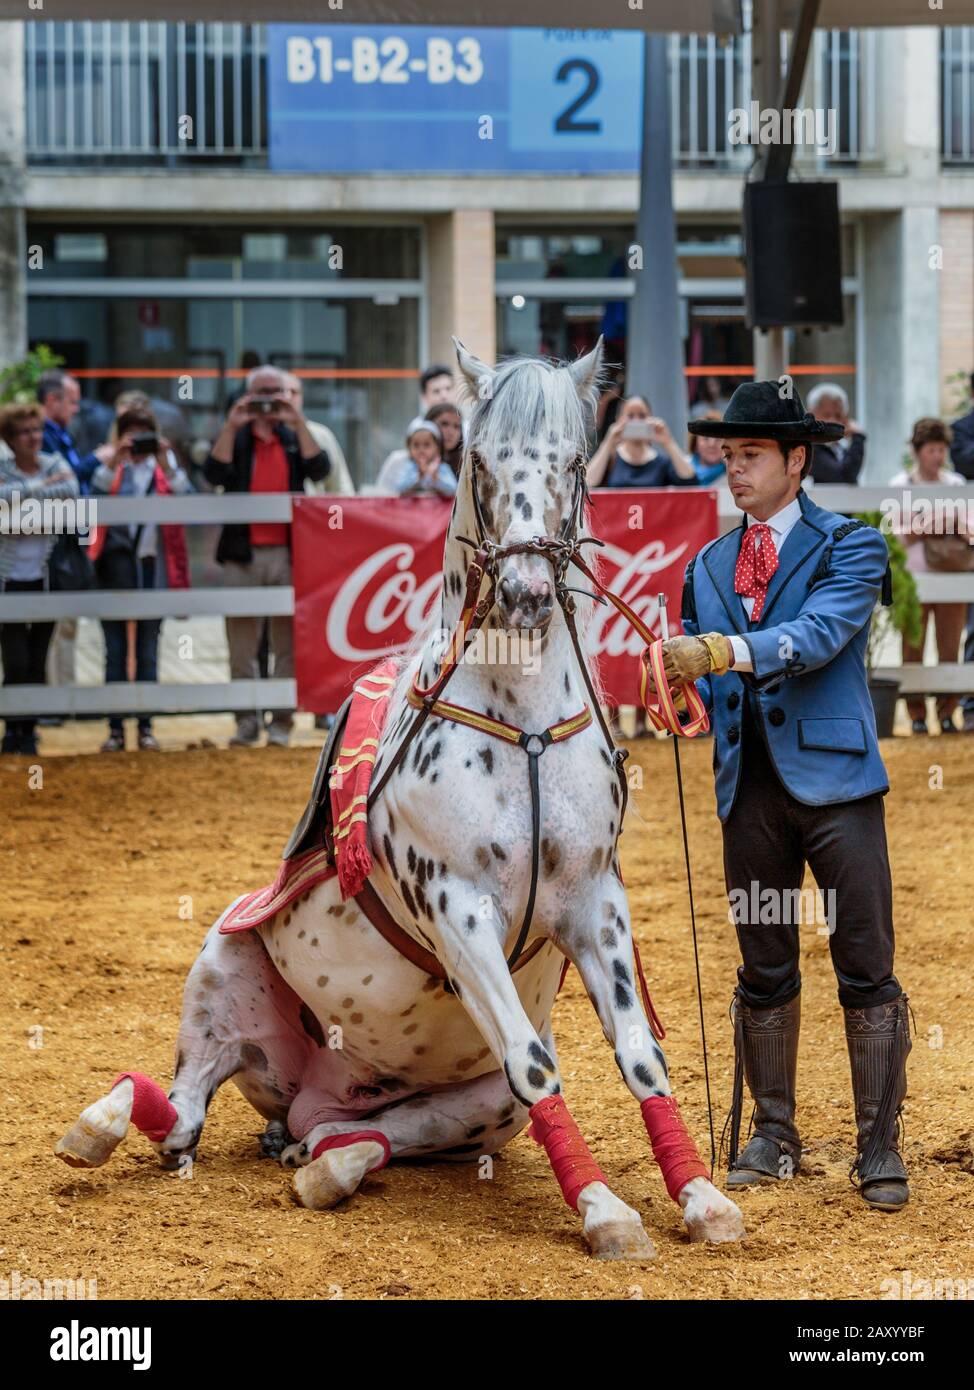 Verschiedene Pferdeveranstaltungen finden statt, darunter die Pferdedisziplin auf der jährlichen Pferderennausstellung Jerez (Feria de Caballo), Jerez de la Frontera, Andalusien, Spanien Stockfoto